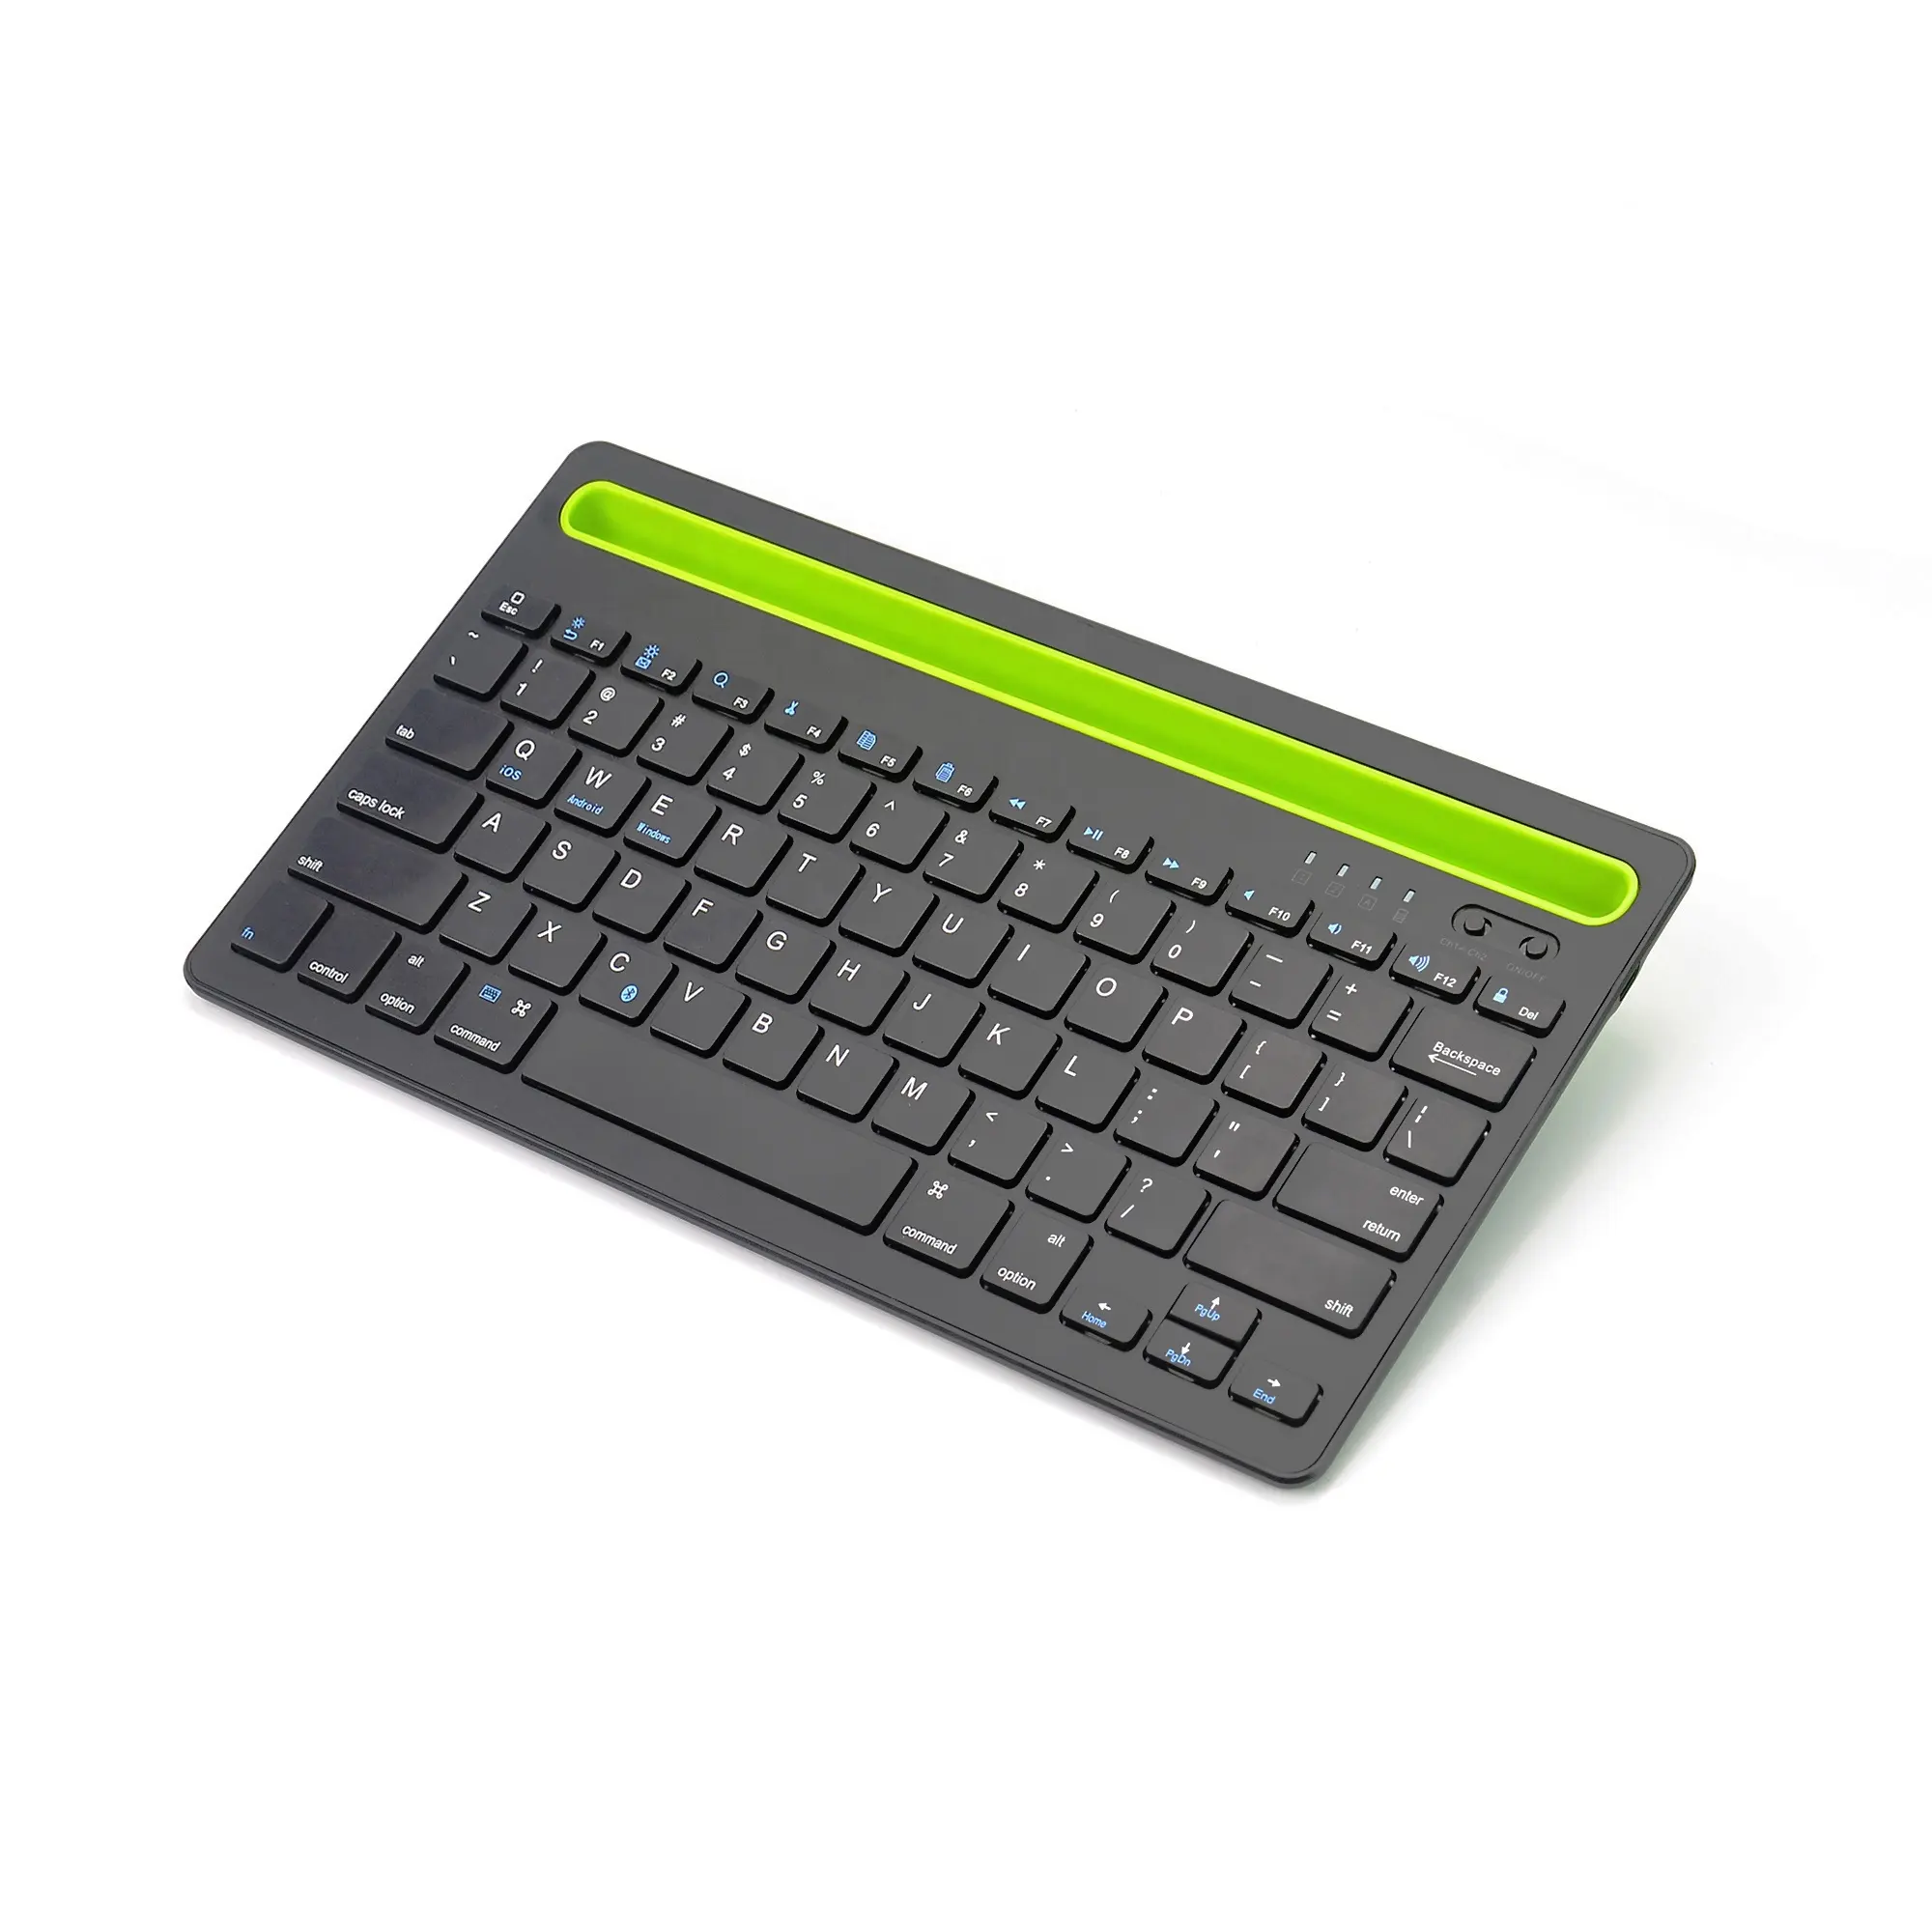 ユニバーサルワイヤレスキーボード充電式Bluetoothsタッチパッドマルチデバイスキーボード、ナンバーパッド付きタブレット用安定接続